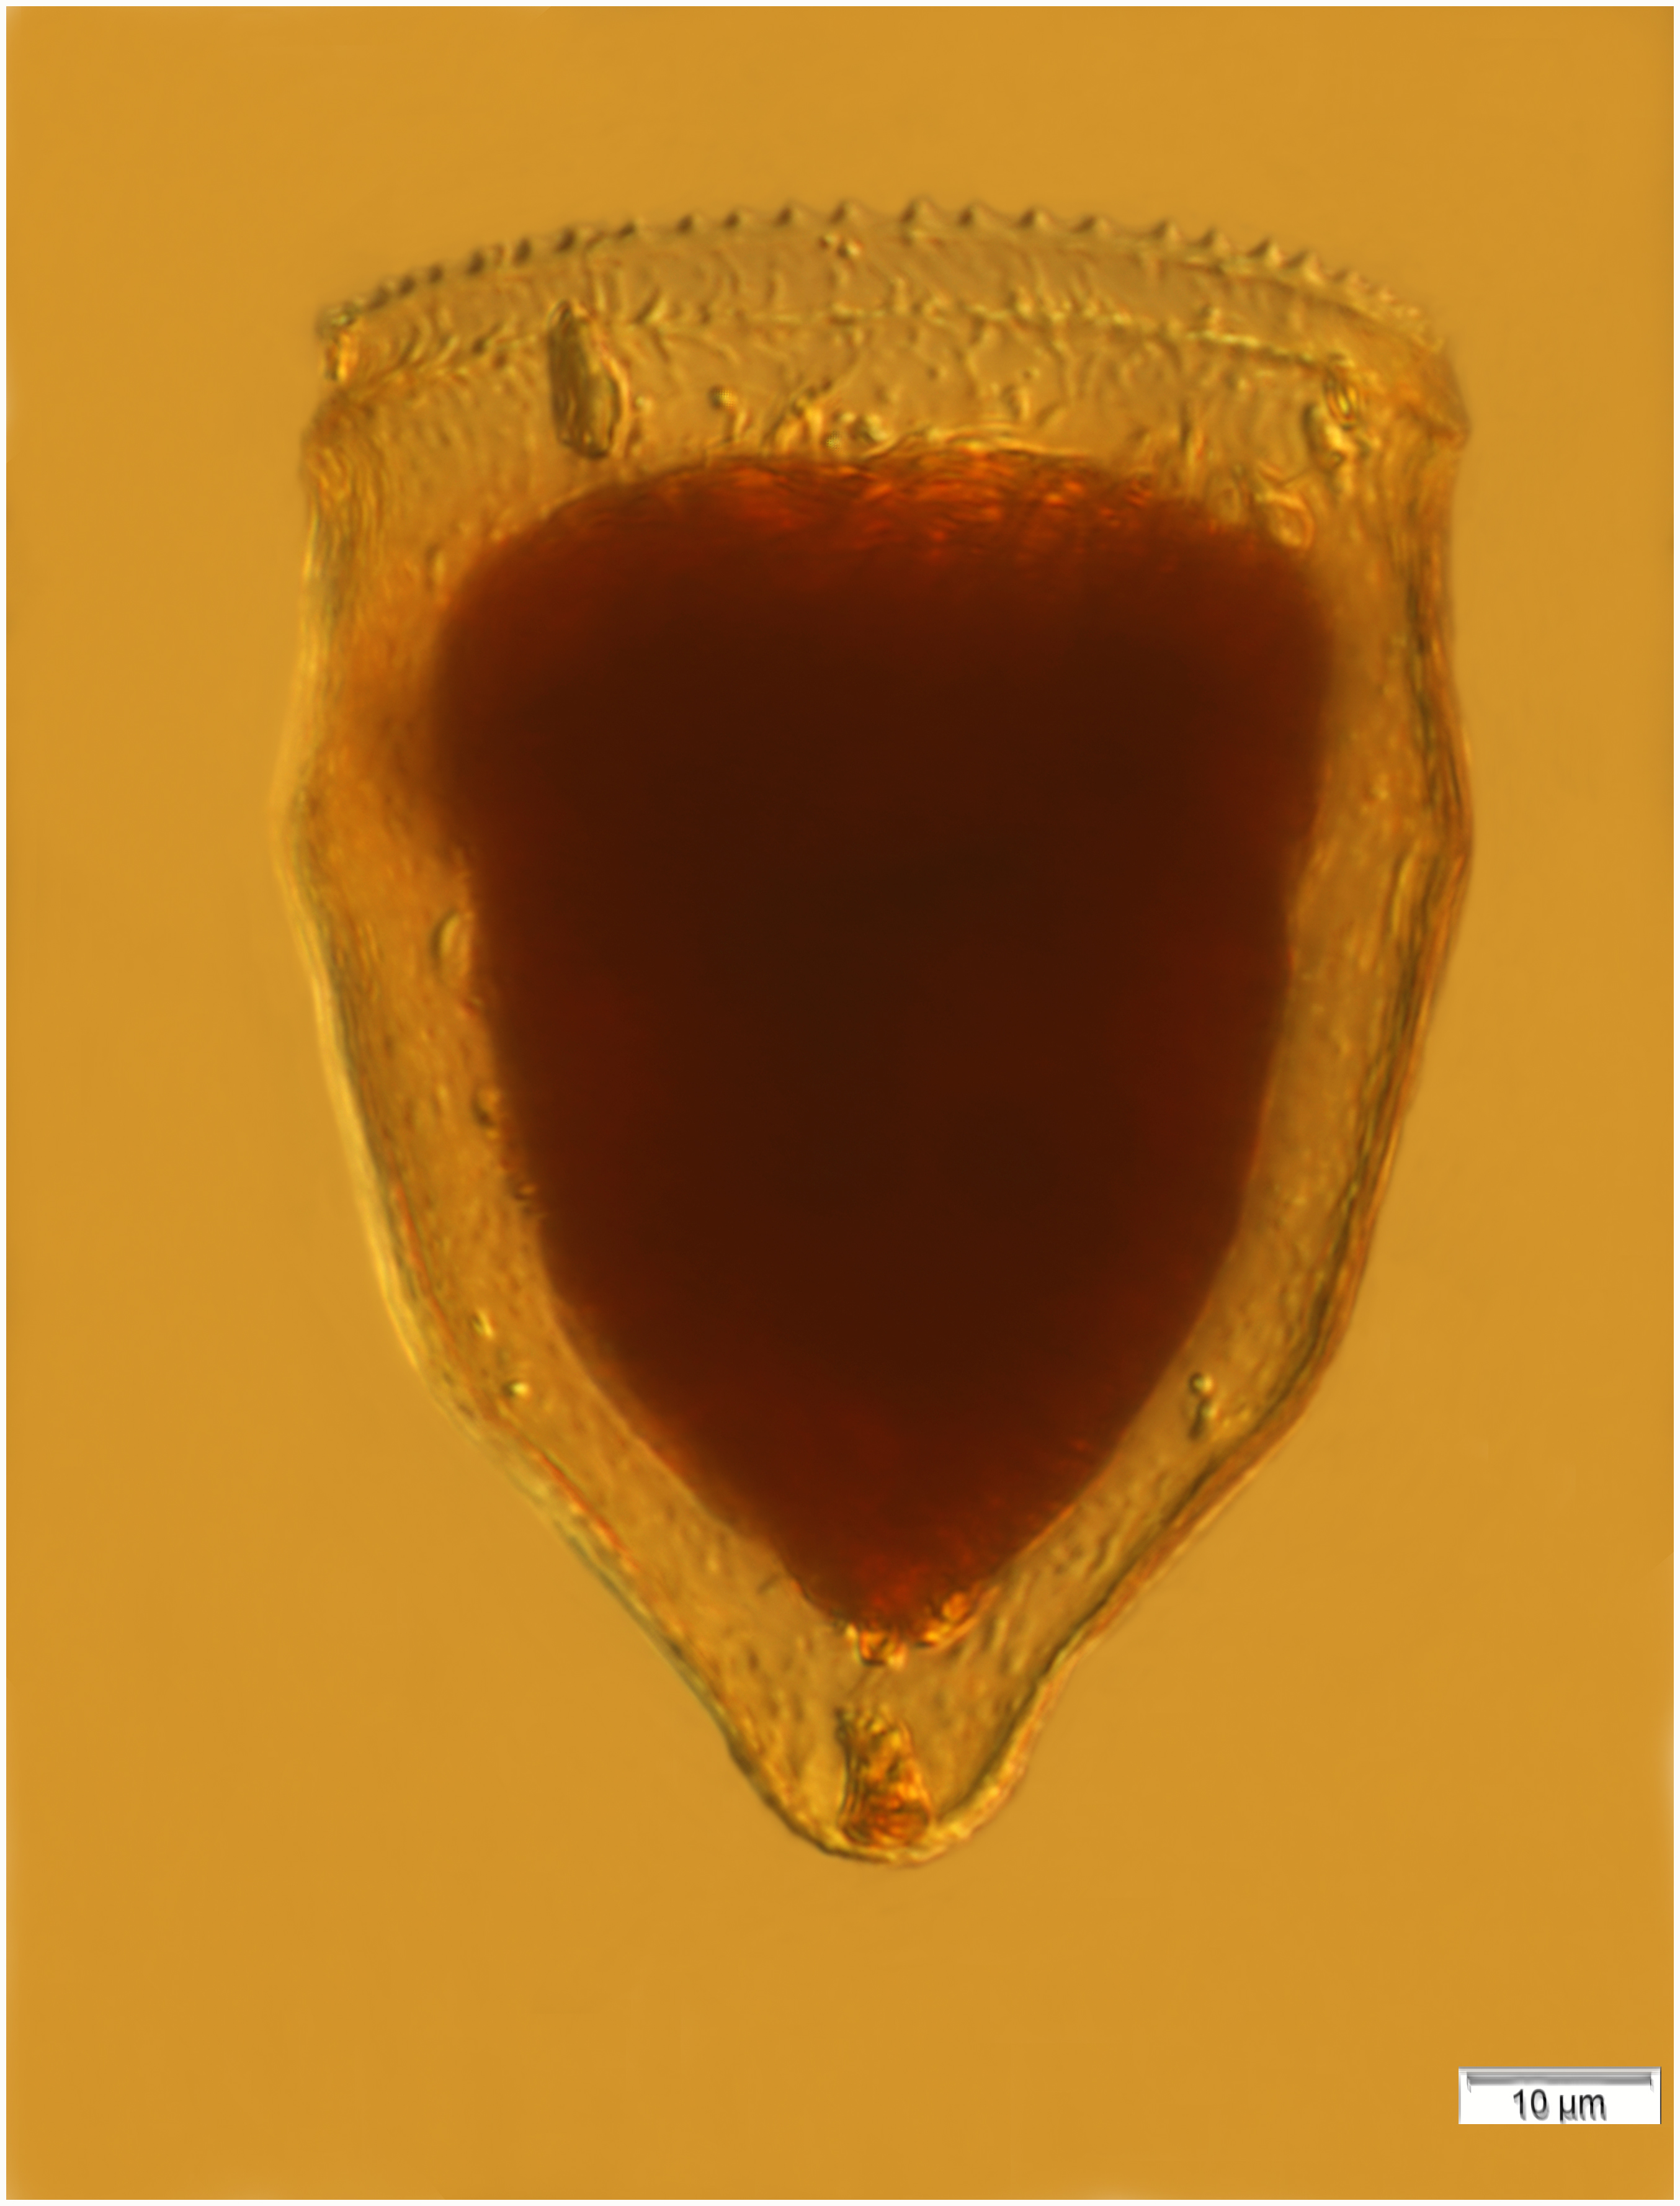 Pytochocylis obtusa